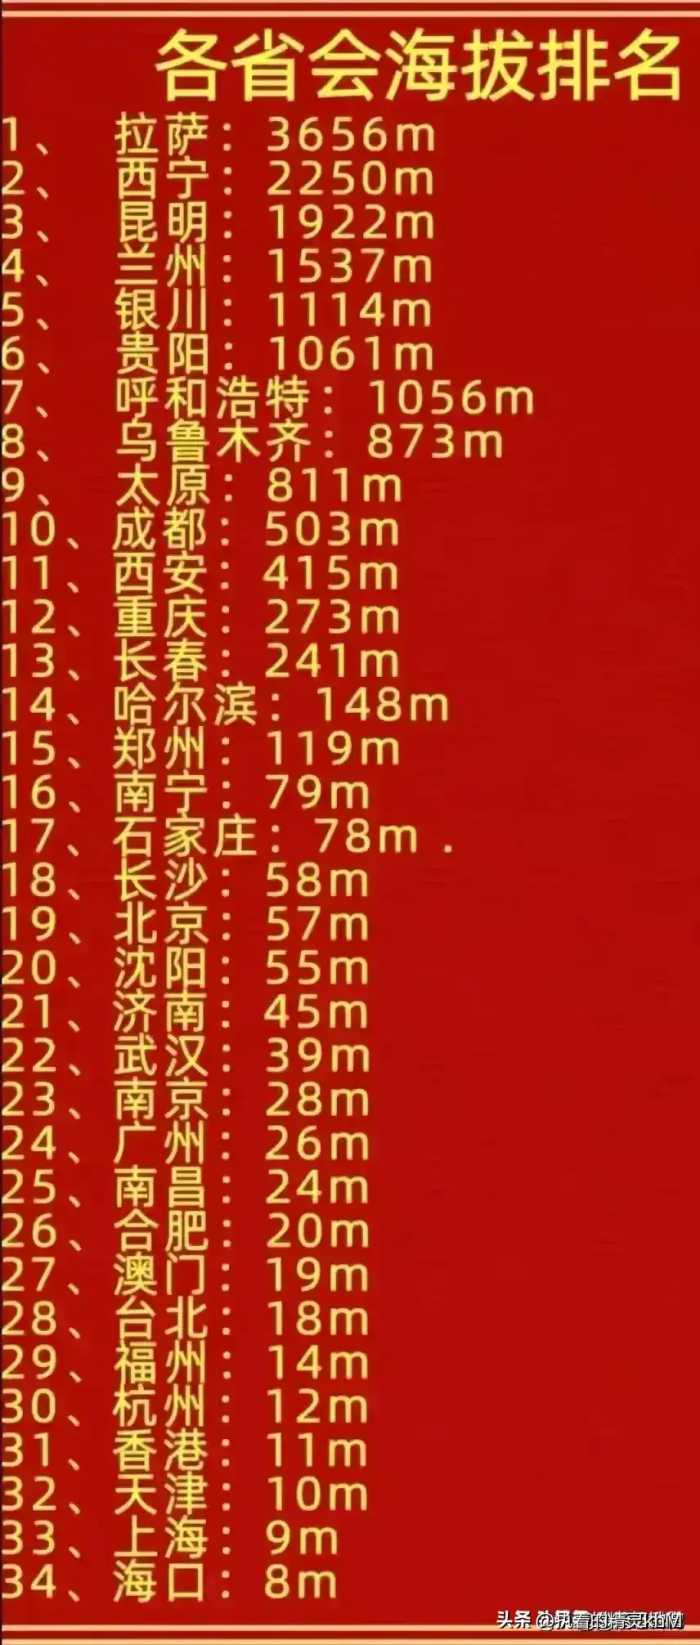 中国奥运会史上获得金牌最多的运动员排名